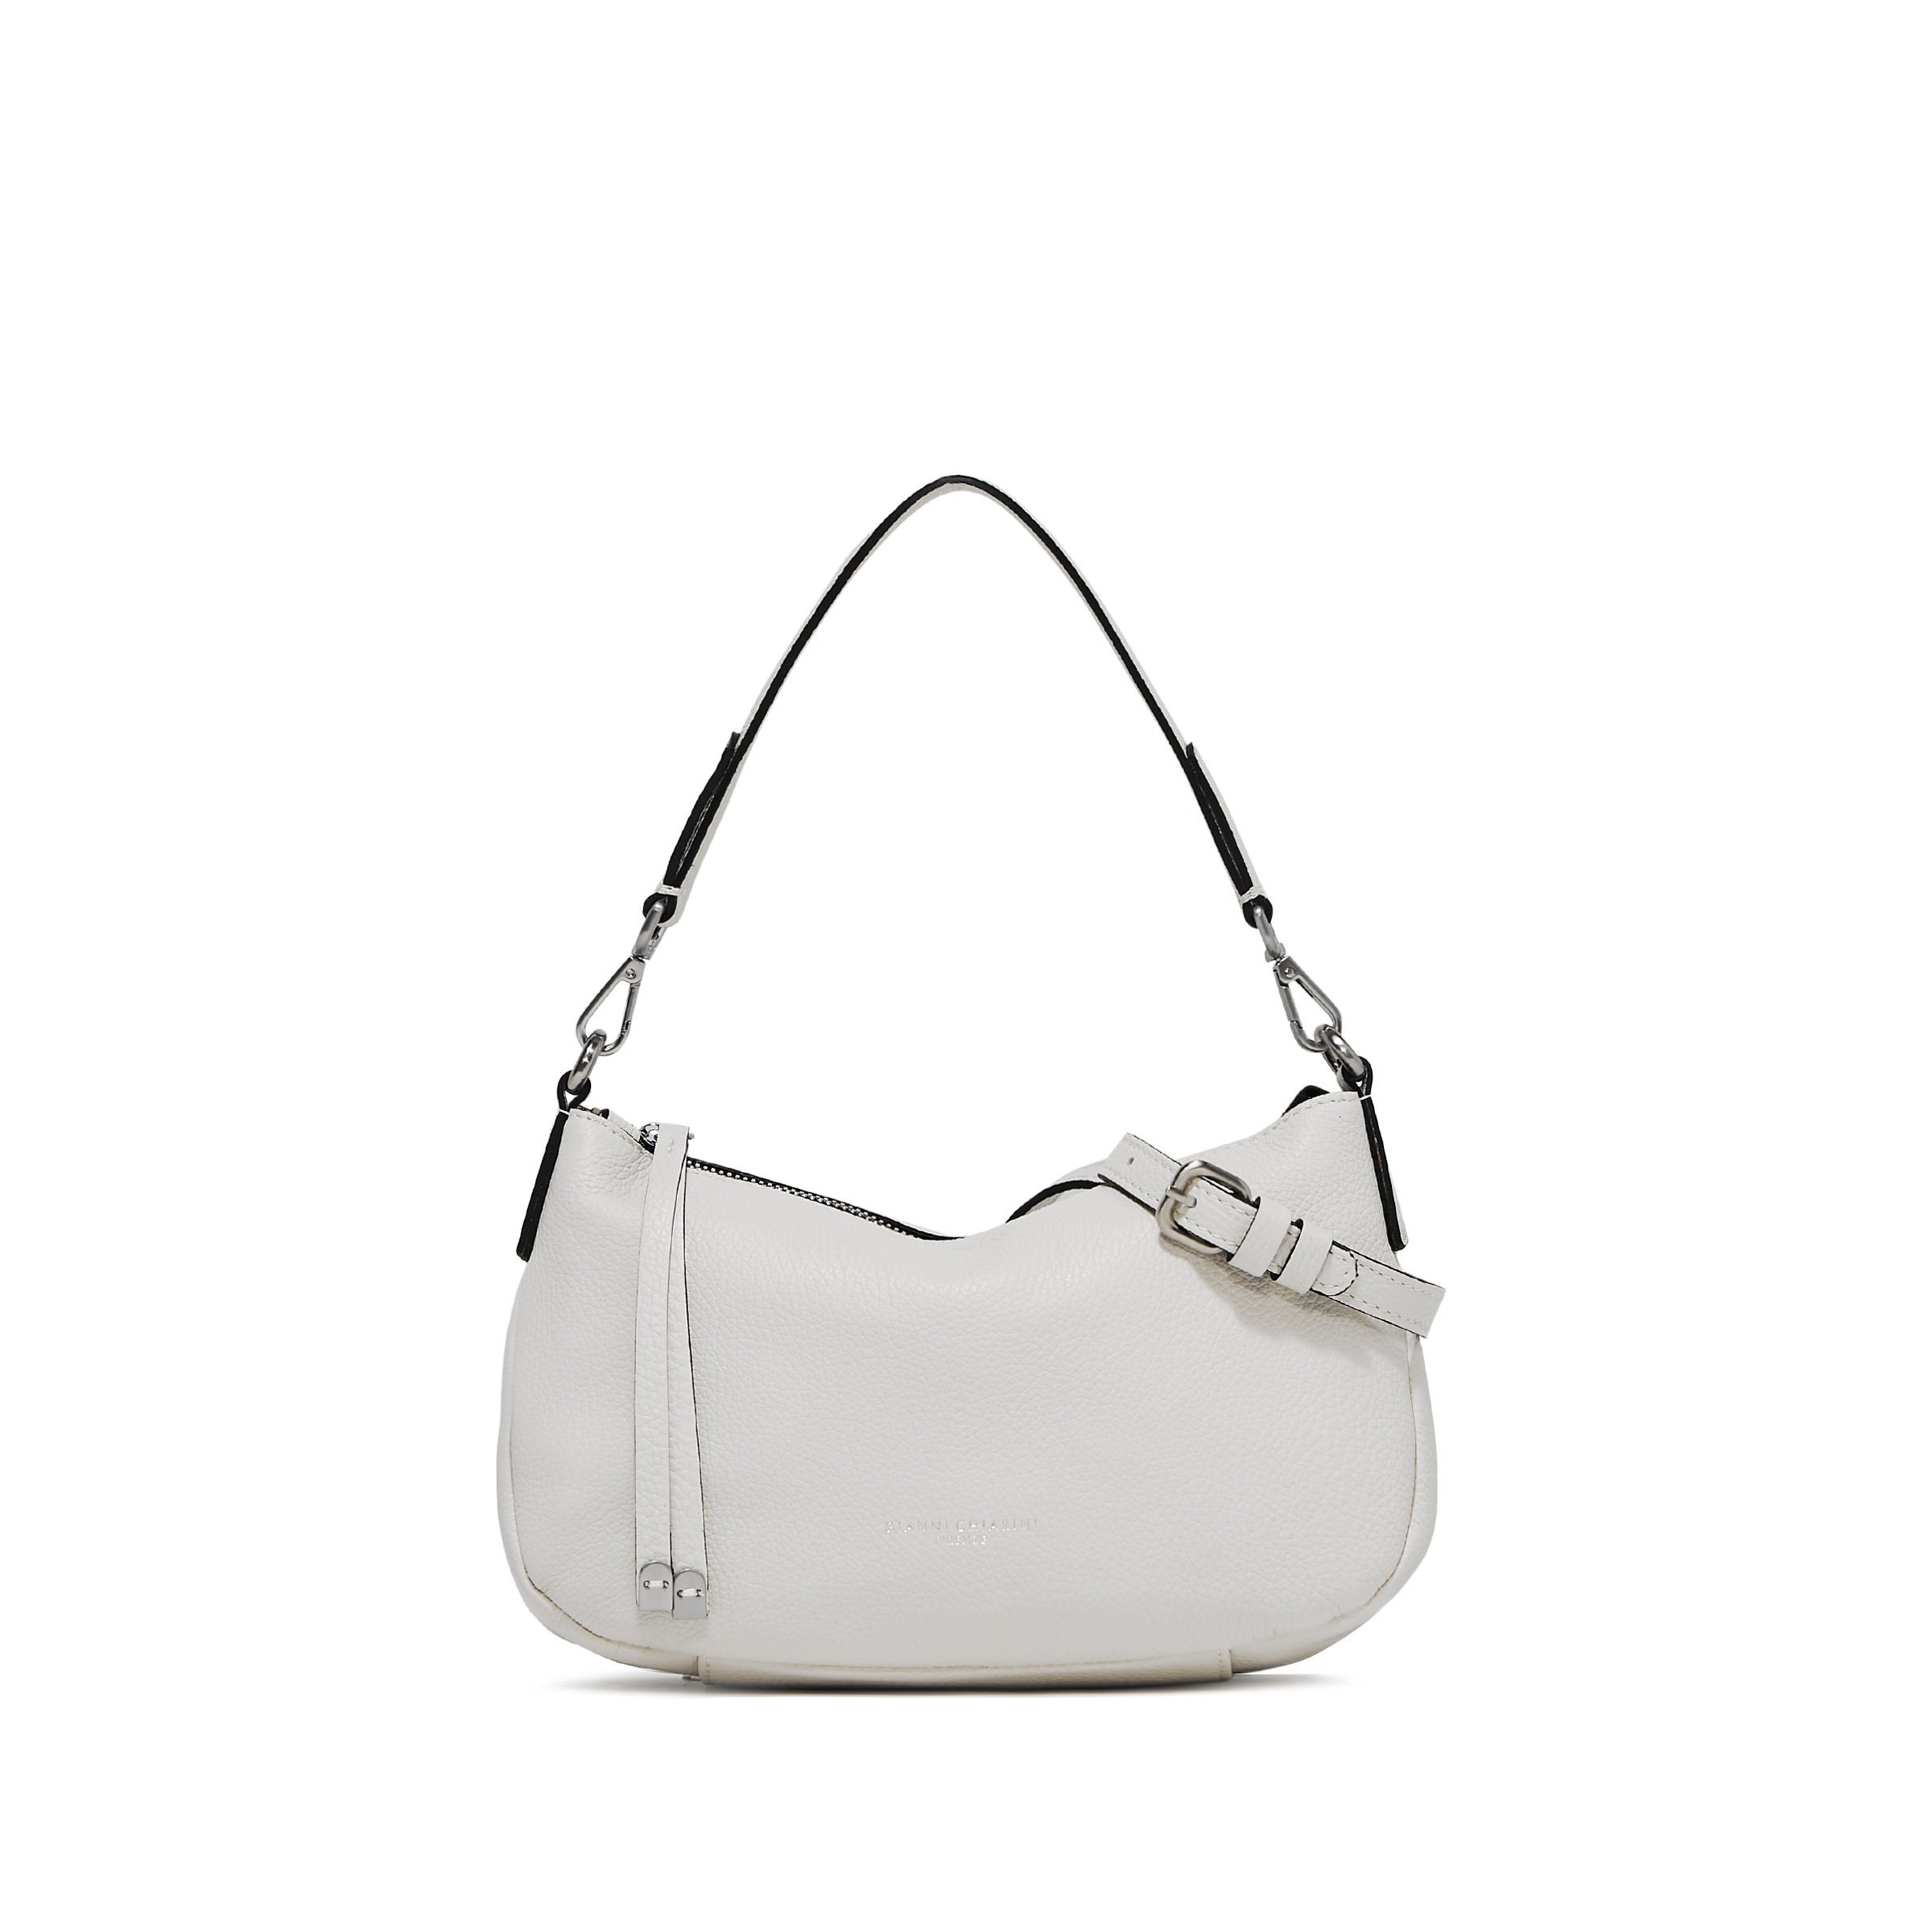 Gianni Chiarini - Nadia Leather bag, White, large image number 1